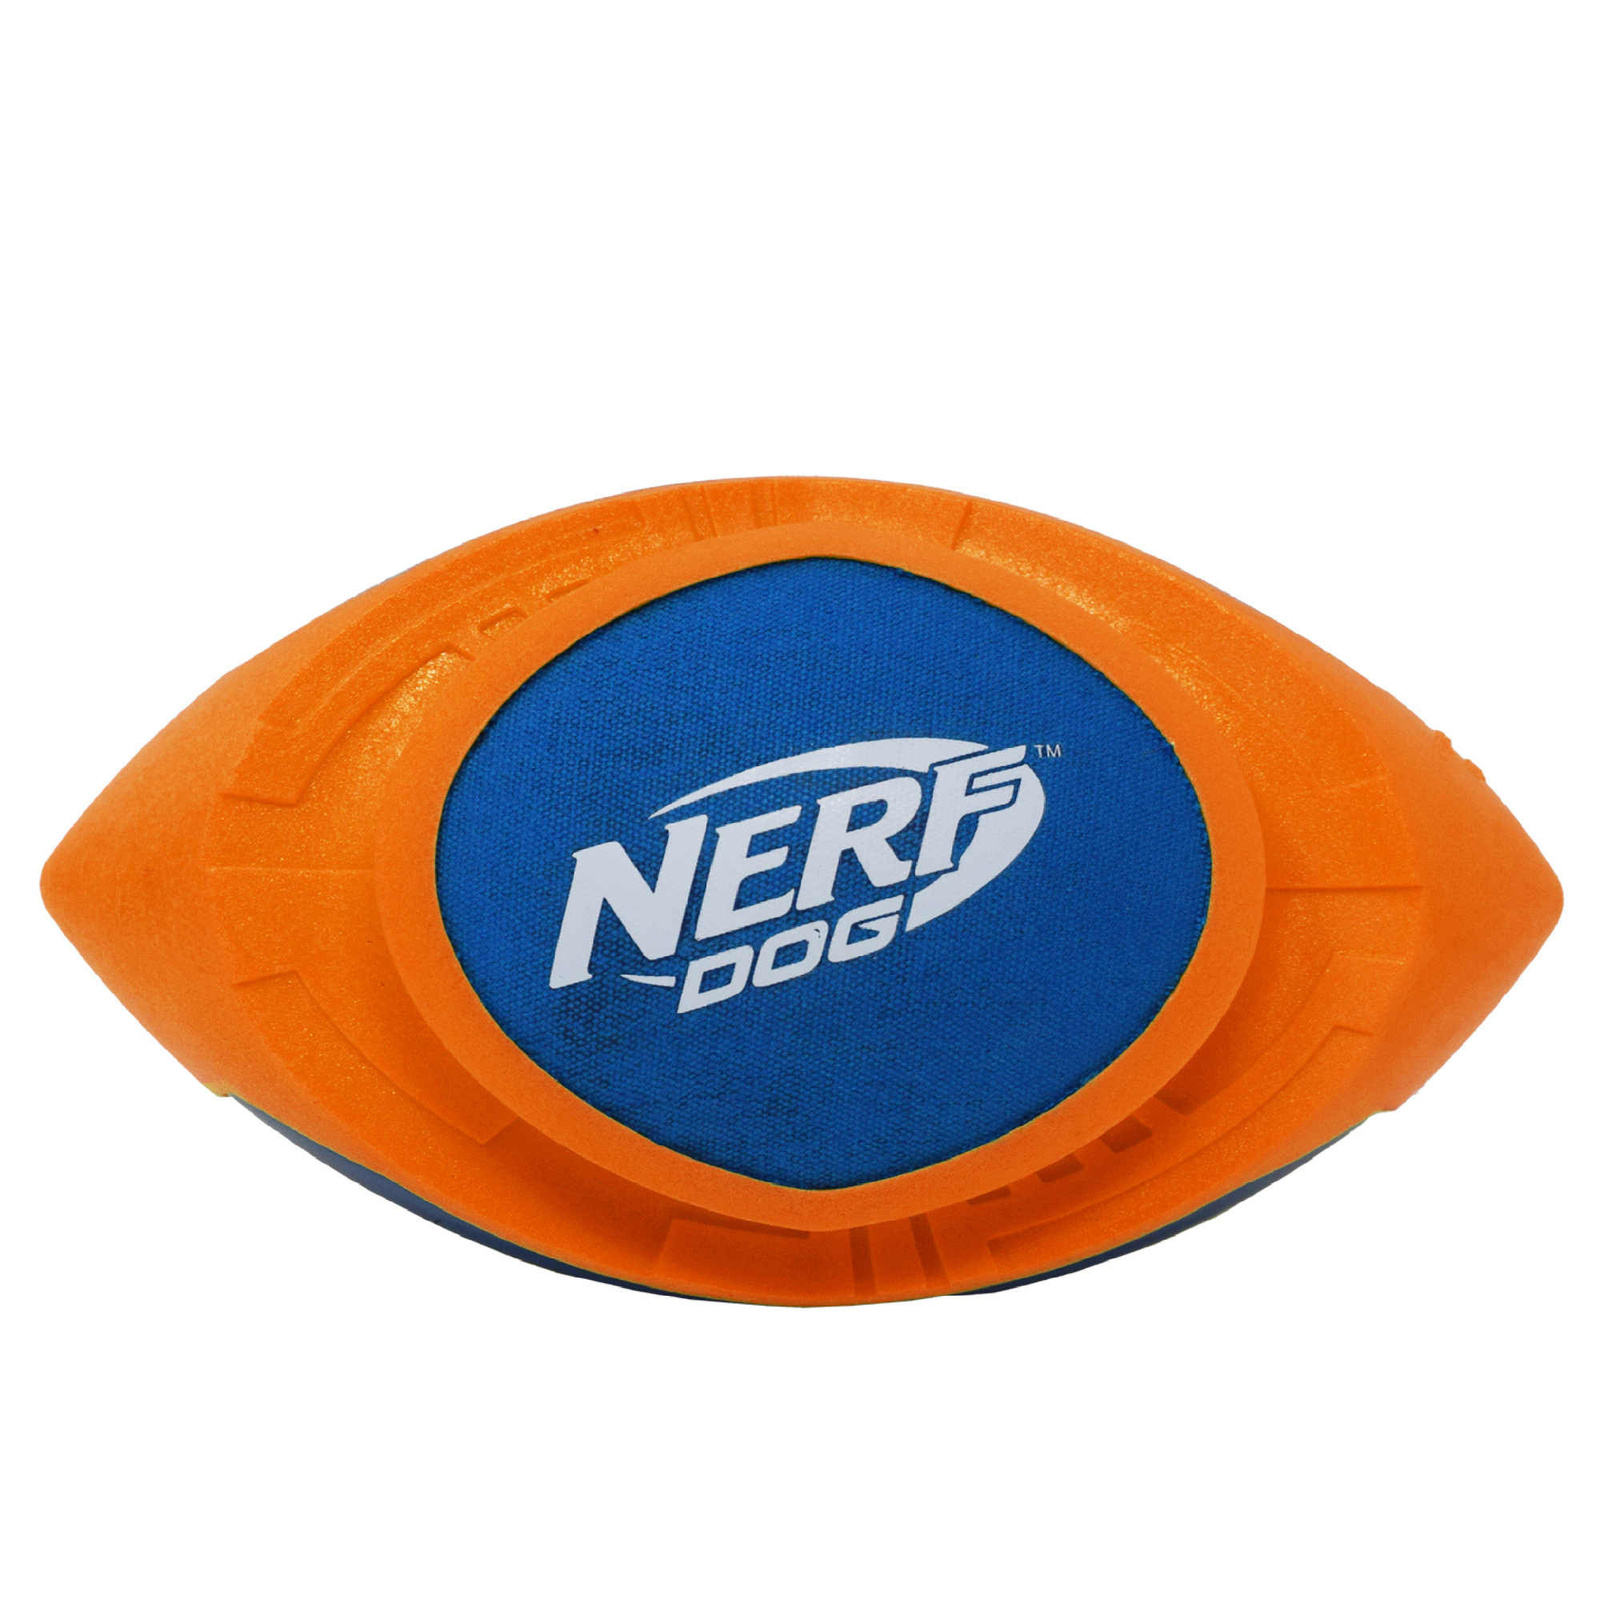 Nerf Nerf мяч для регби из вспененной резины и нейлона, 18 см (серия Мегатон), (синий/оранжевый) (263 г) nerf nerf мяч для регби из вспененной резины и нейлона 18 см серия мегатон синий оранжевый 263 г